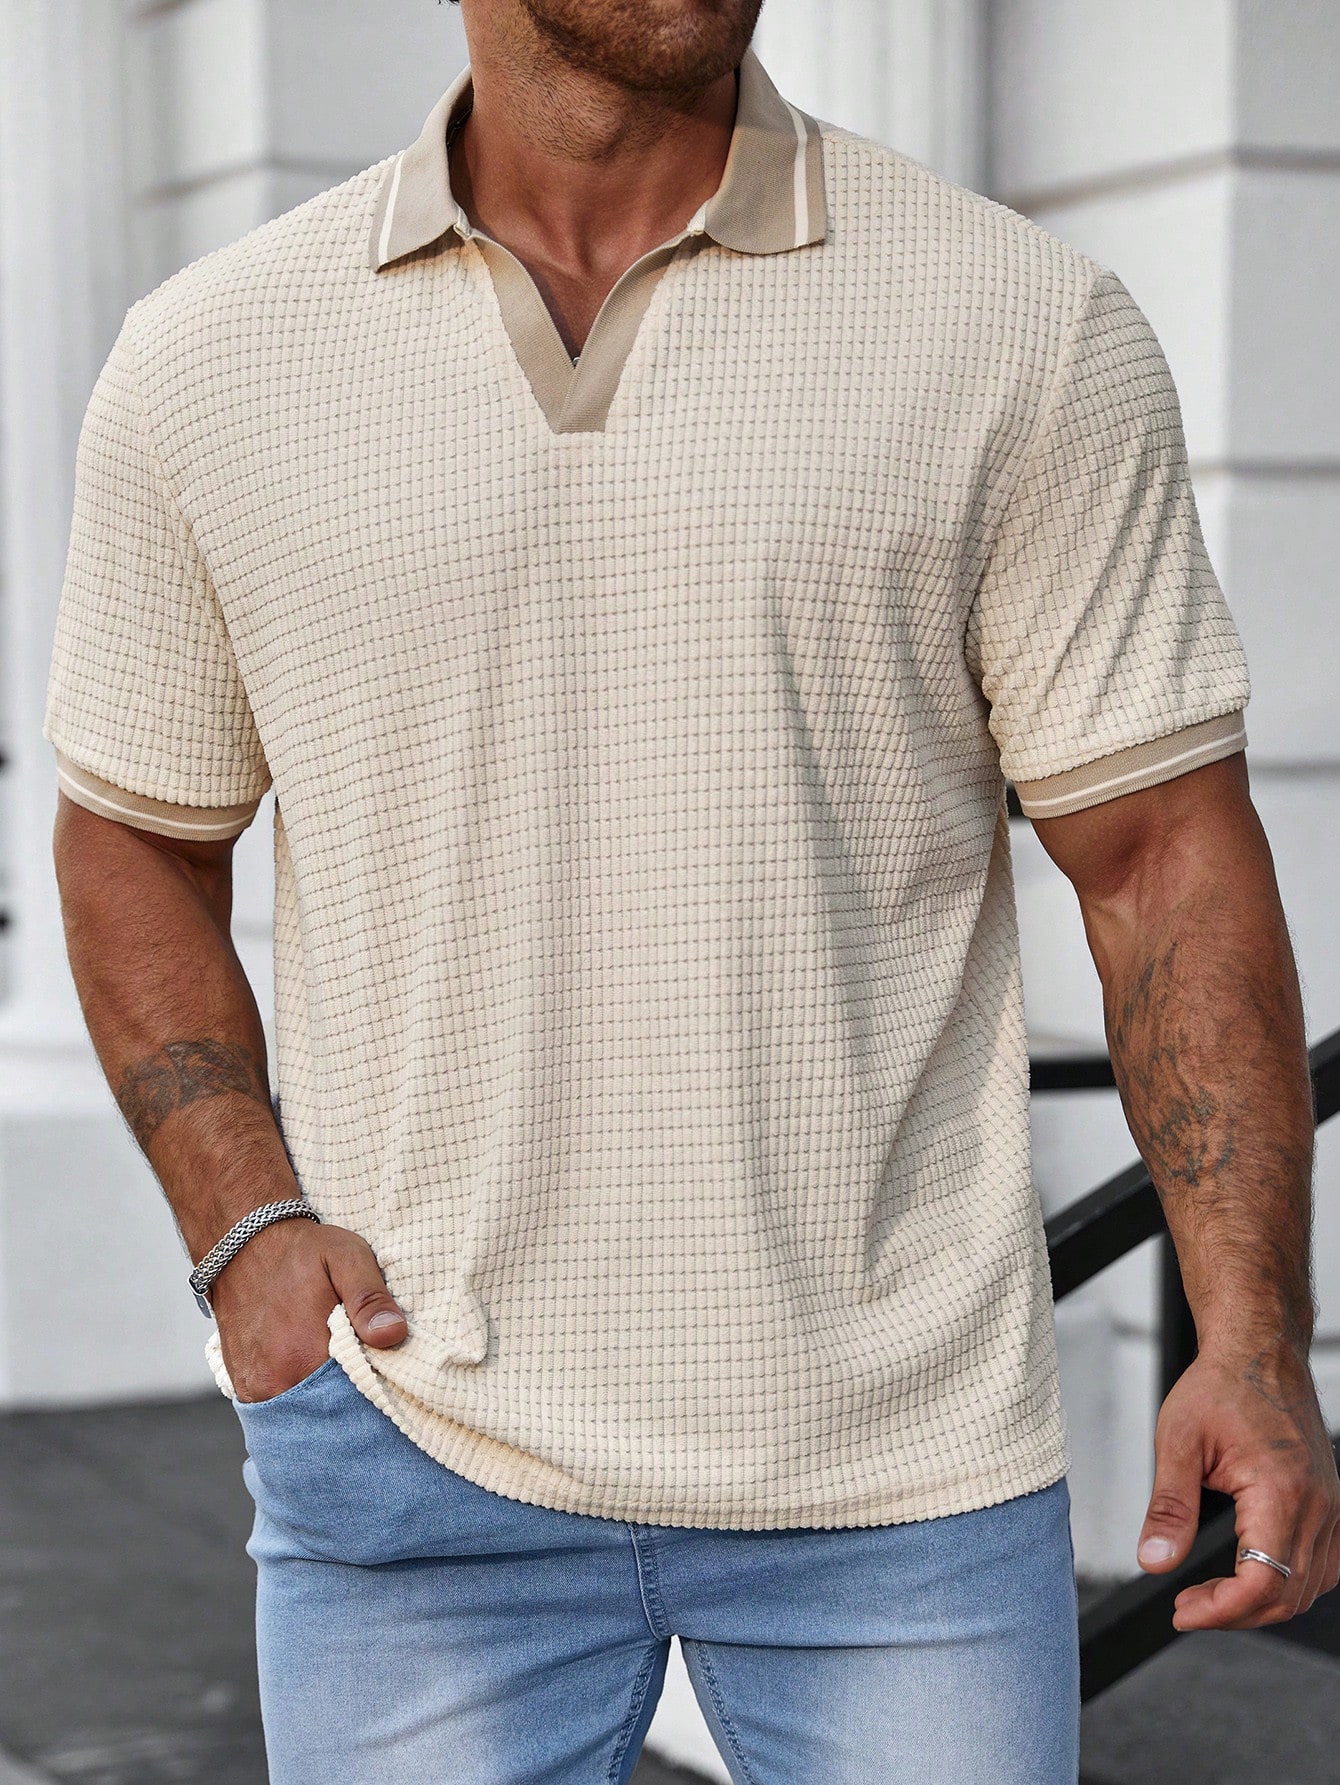 Мужская рубашка-поло больших размеров Manfinity Homme с цветными блоками, абрикос